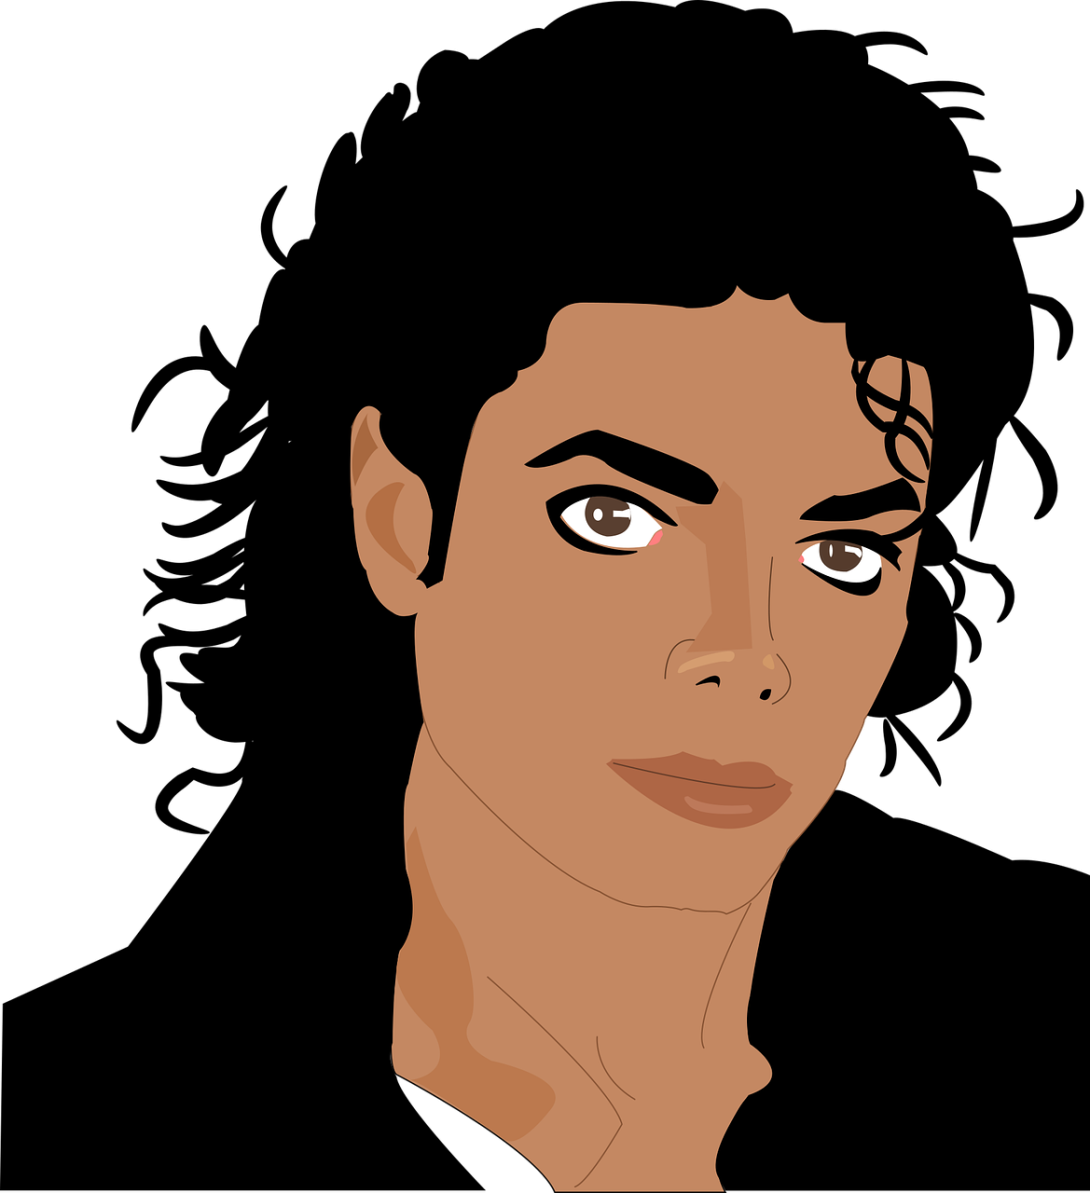 Michael Jackson - Thriller wird 40